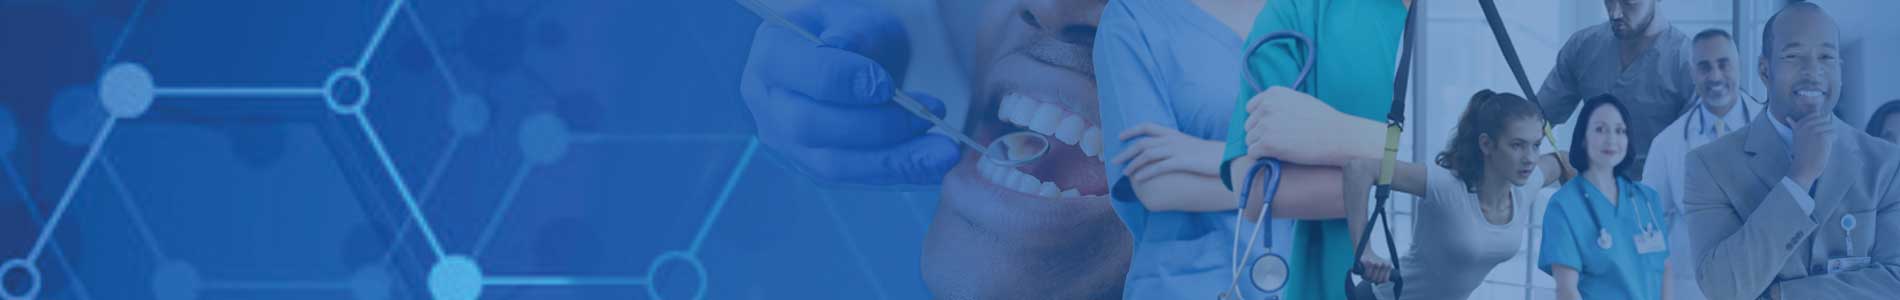 Dental Hygiene banner image